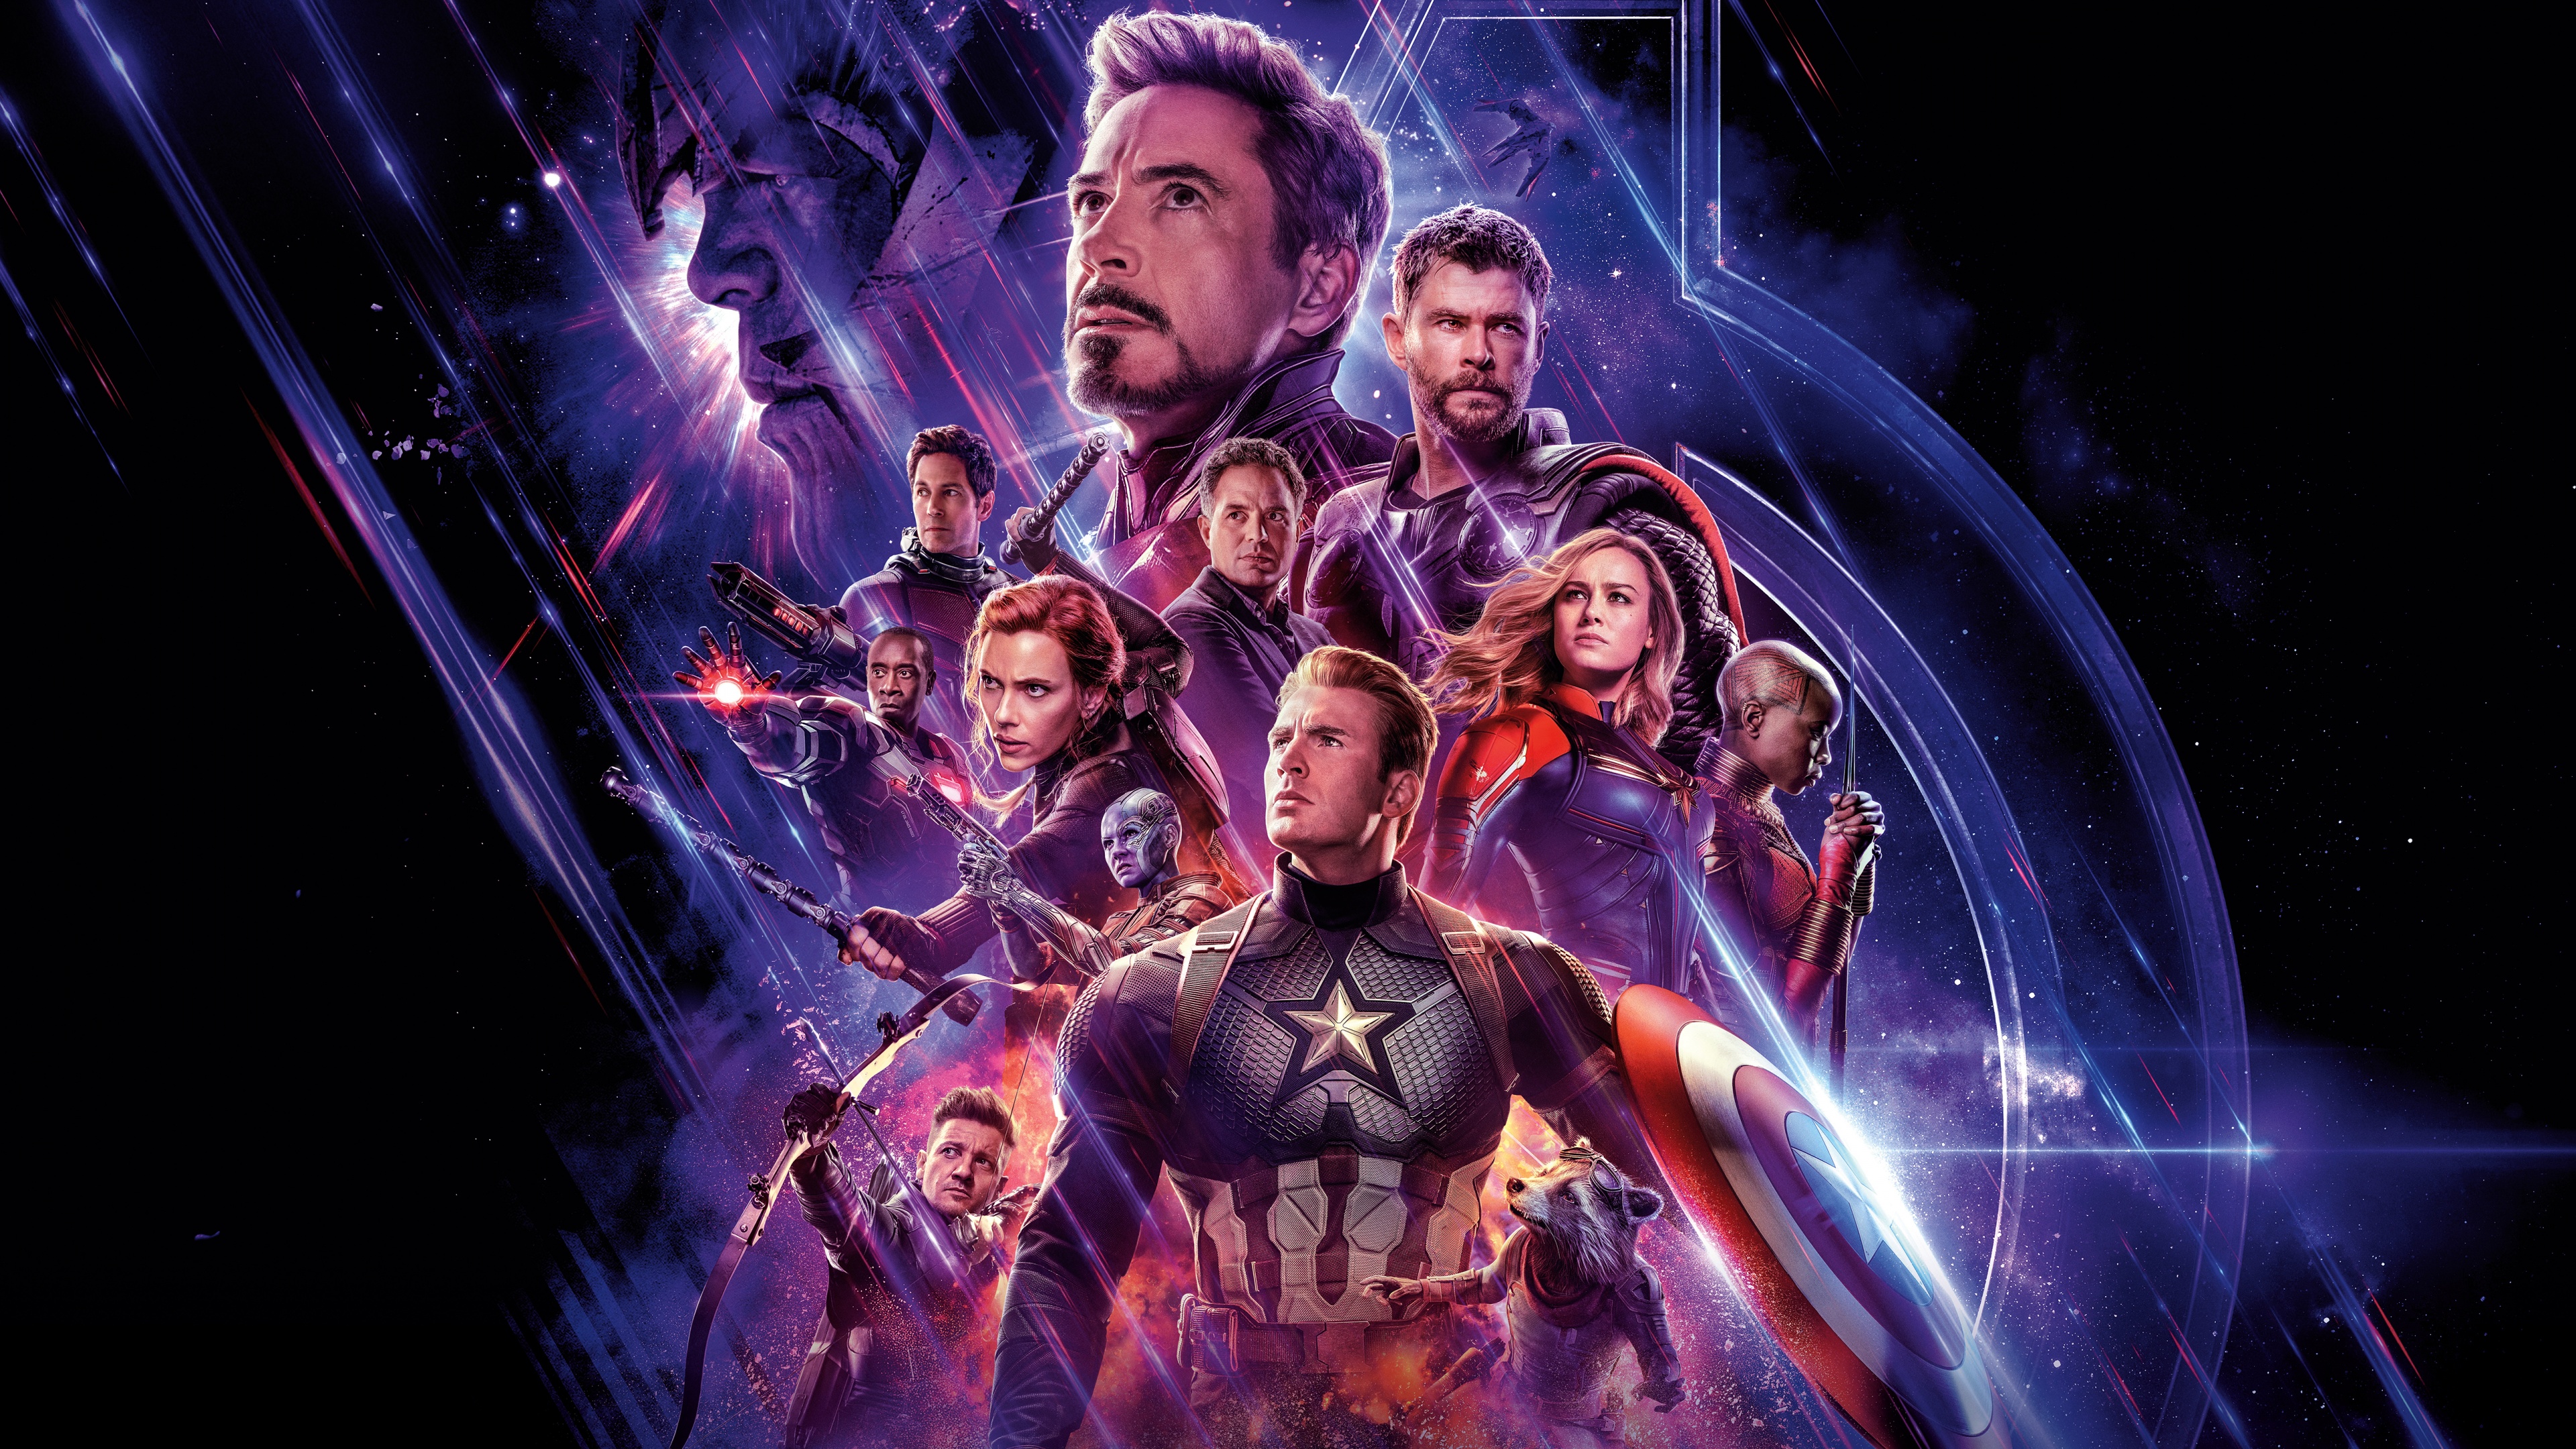 Avengers: Endgame Wallpaper 4K, Marvel Superheroes, Movies, #942